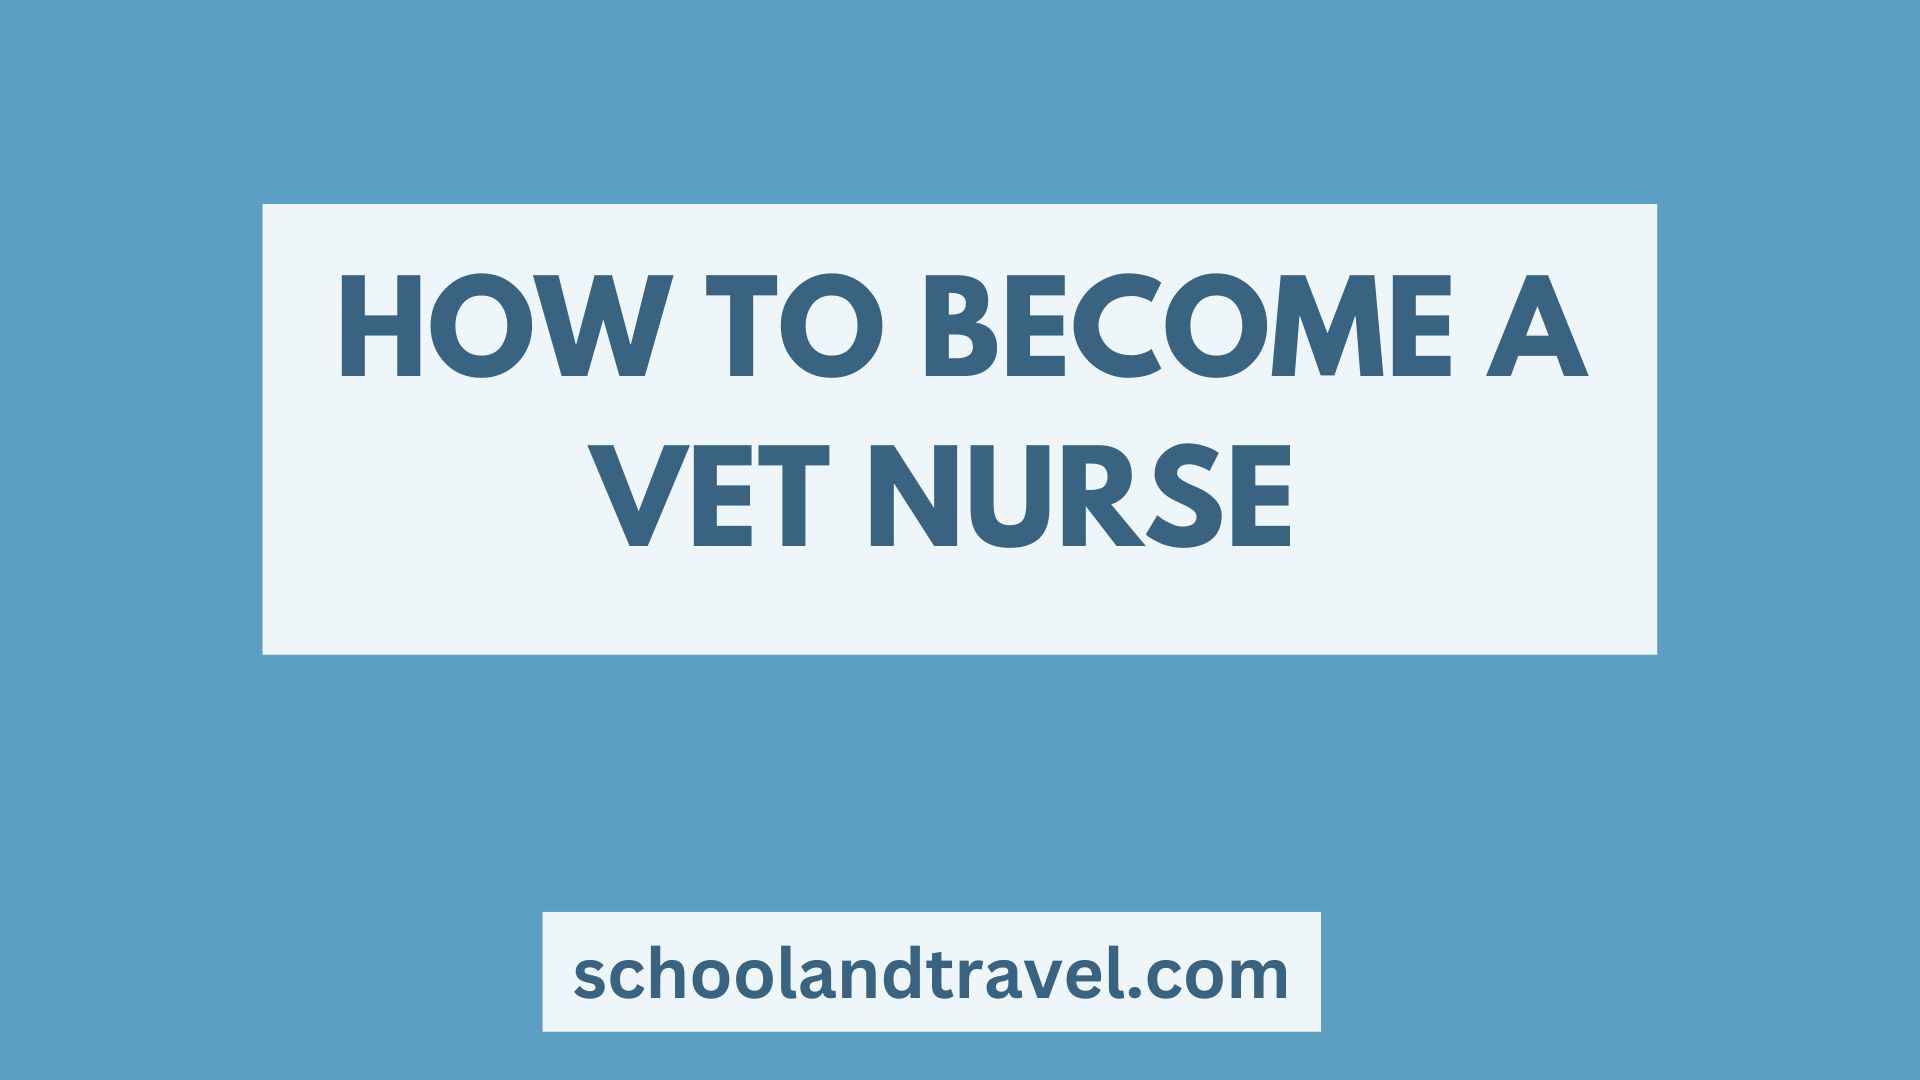 How To Become A Vet Nurse